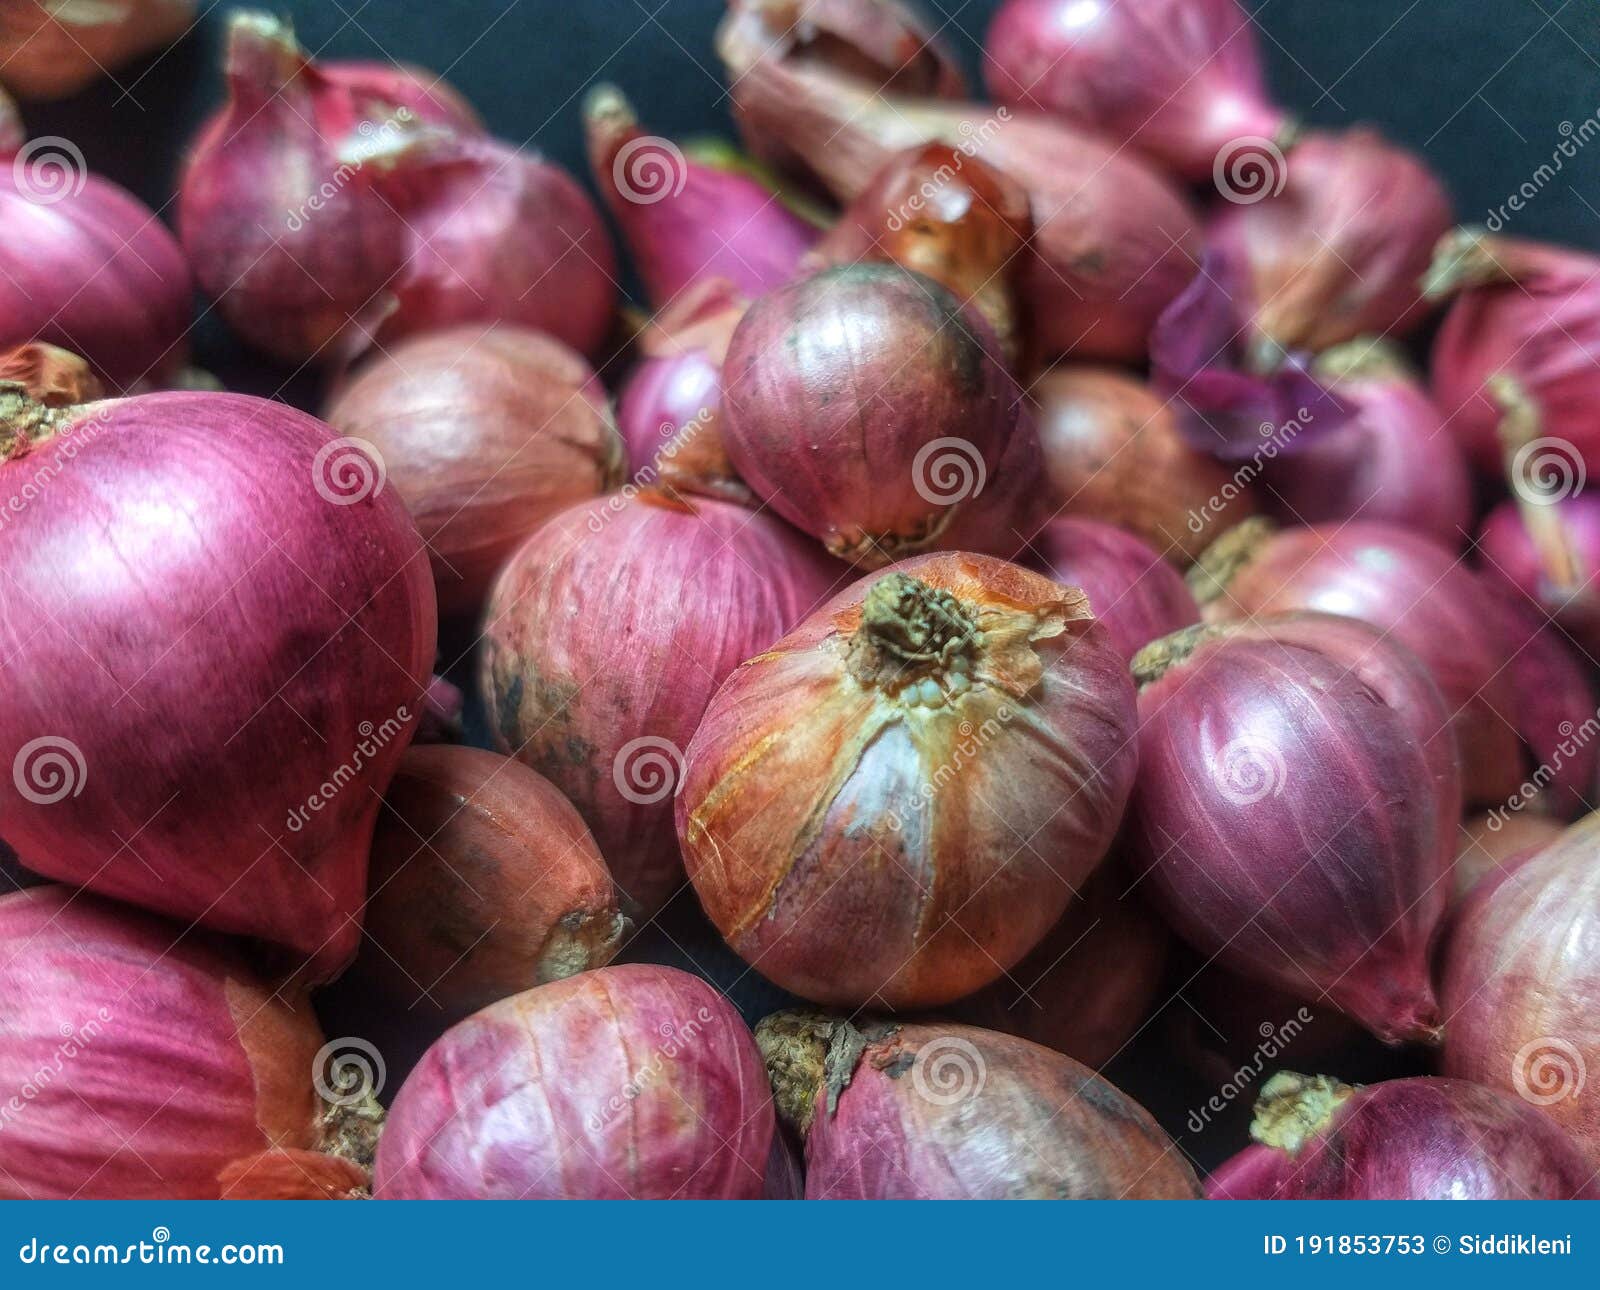 shallot bawang merah onion